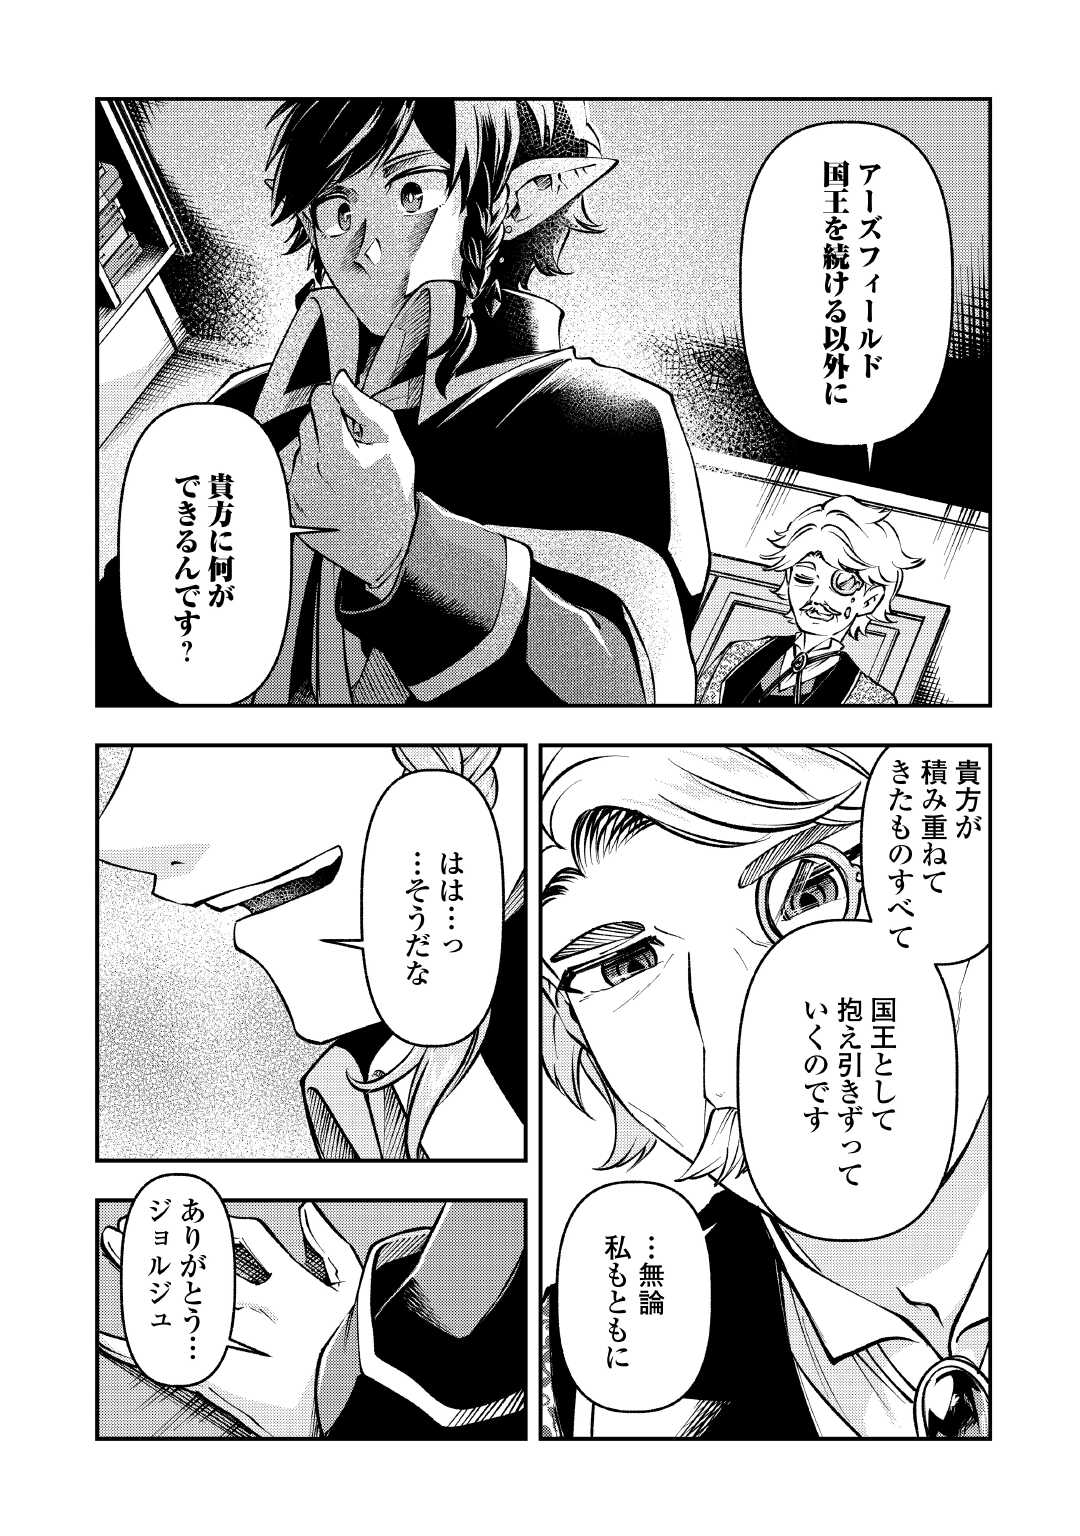 Osanago wa Saikyou no Tamer da to Kizuiteimasen! - Chapter 12 - Page 15